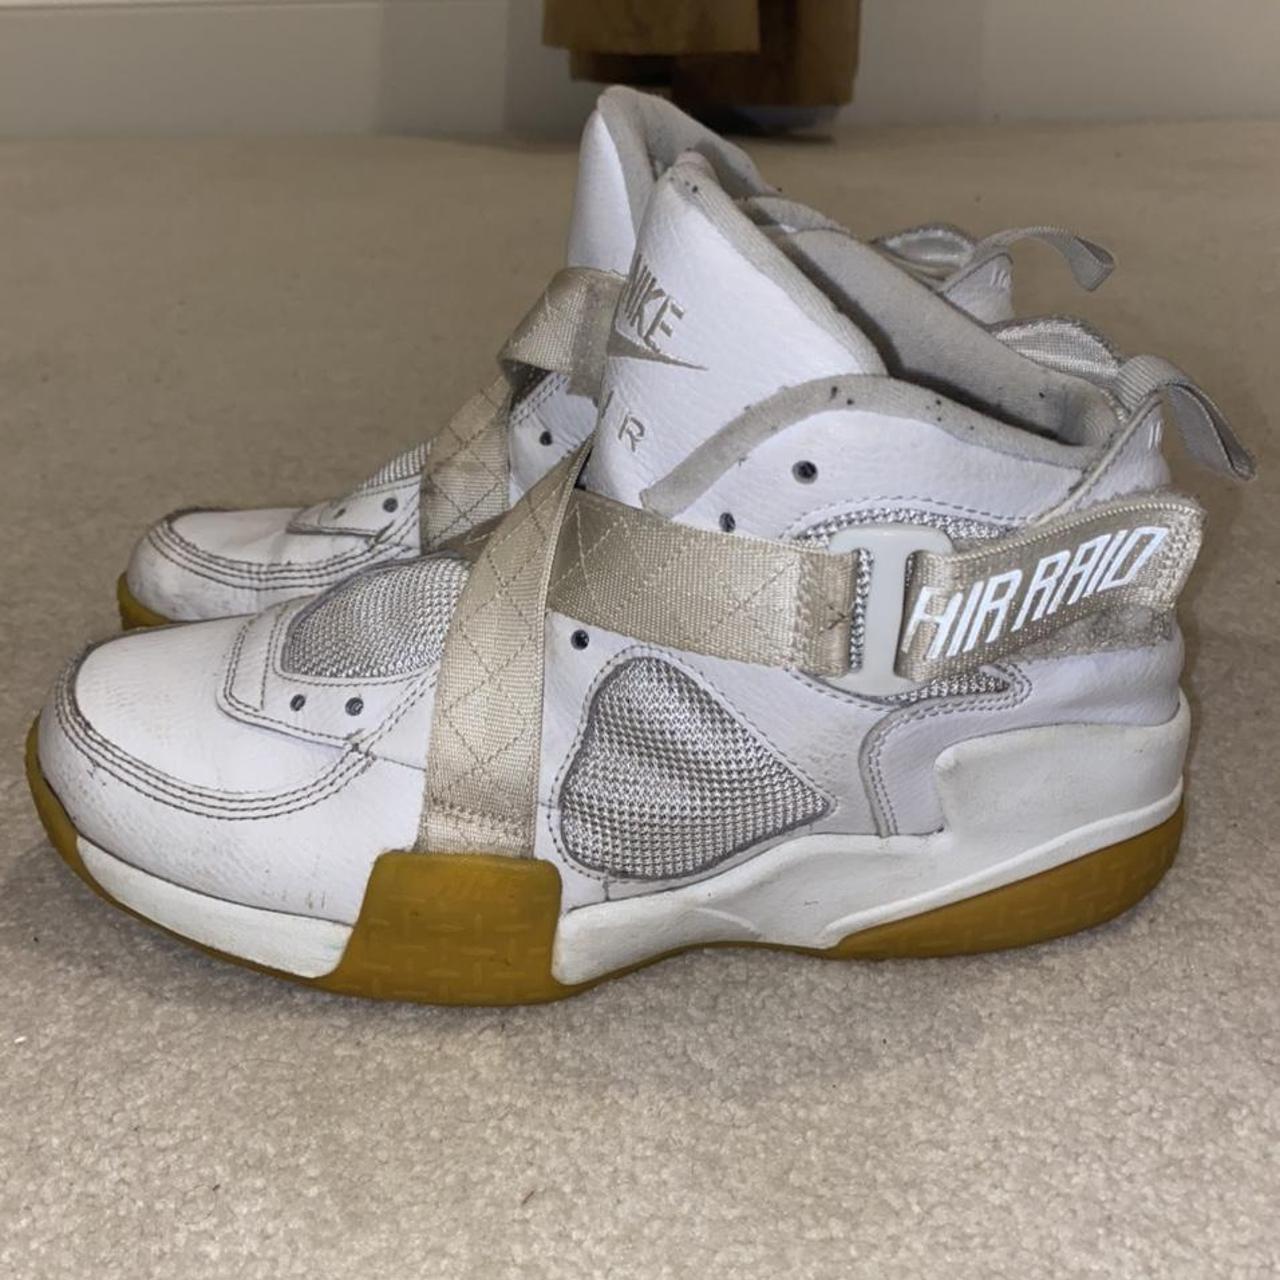 Nike Air Raid White Gum Basketball Shoes